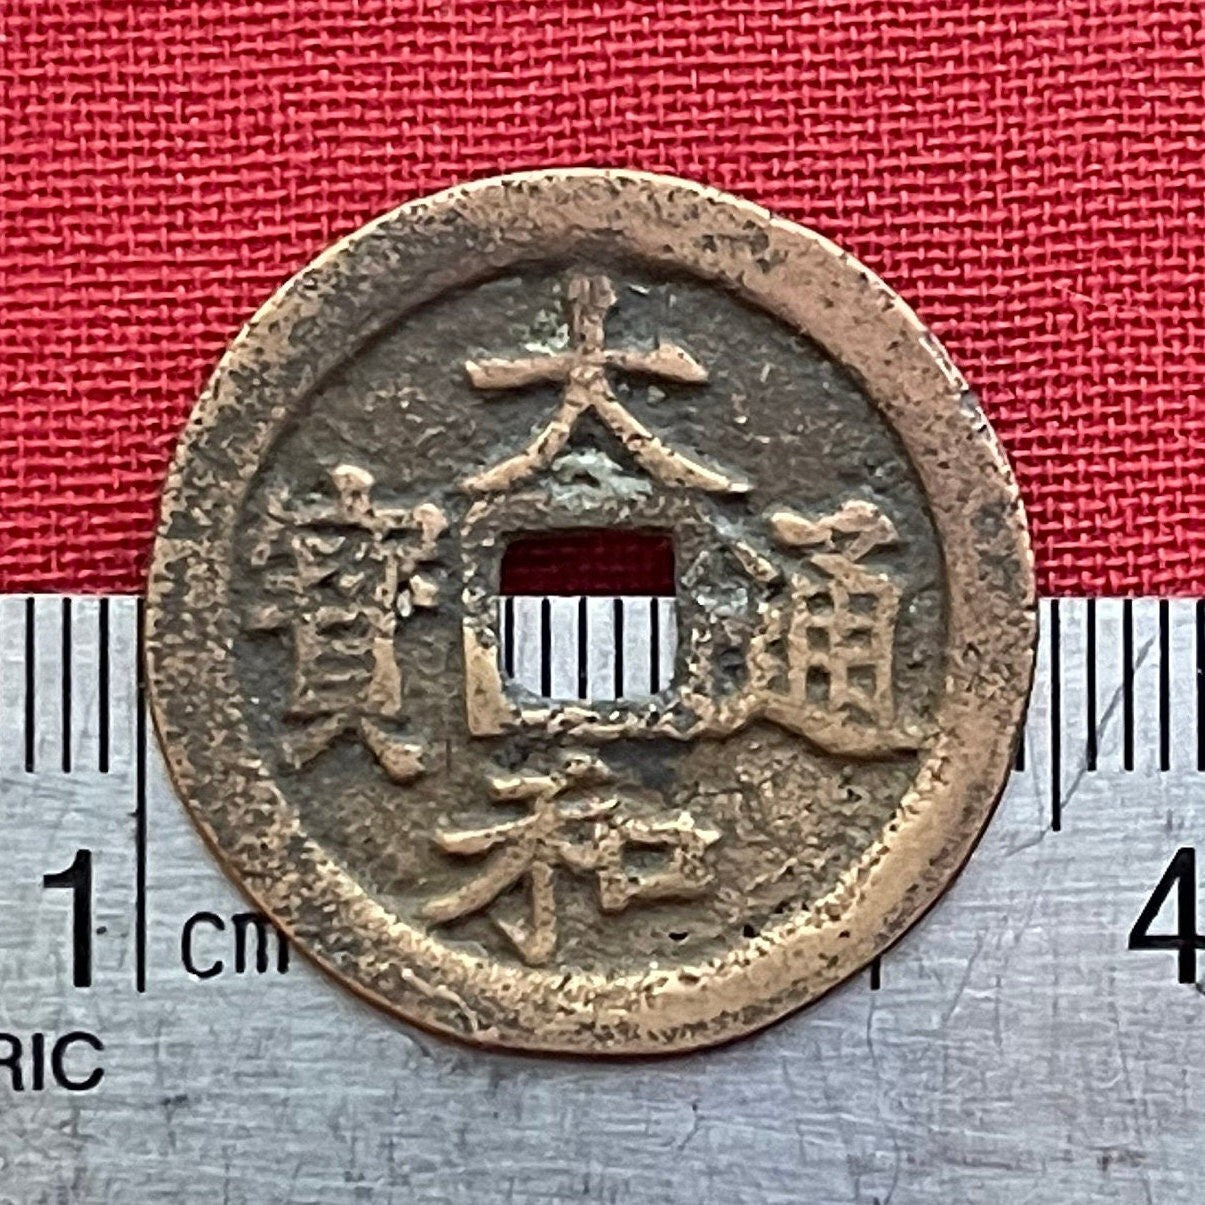 Empress Dowager Tuyên Từ (Date: 1443-1453) Đại Hòa Thông Bảo Reign Title for Child Emperor Lê Nhân Tông 1 Văn Vietnam Authentic Coin FAIR